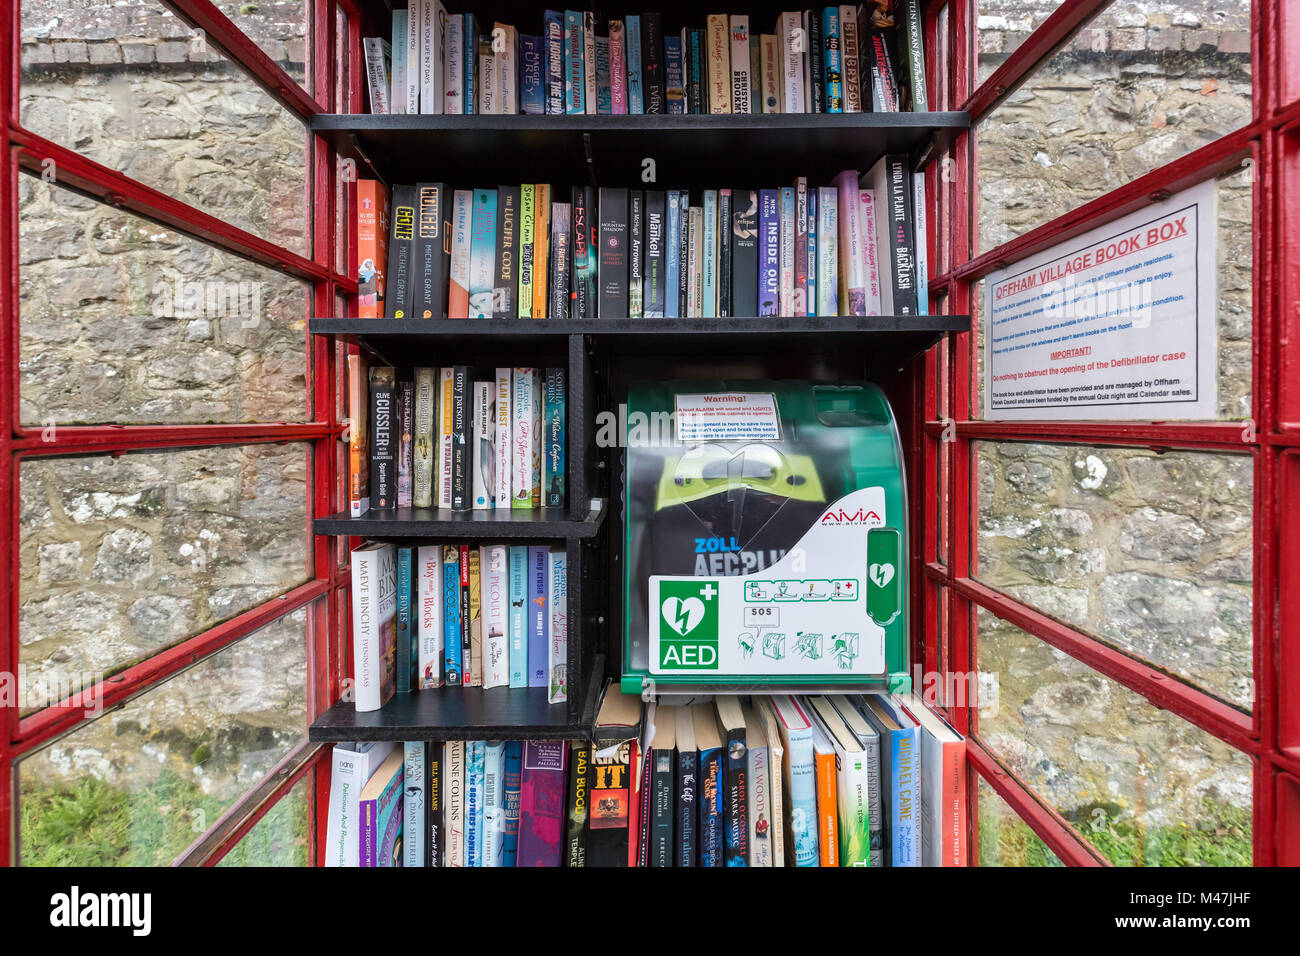 Telefono rosso box libro 'Box Swap' biblioteca comprendente lifesaving defibrillatore in Offham, Kent. Foto Stock